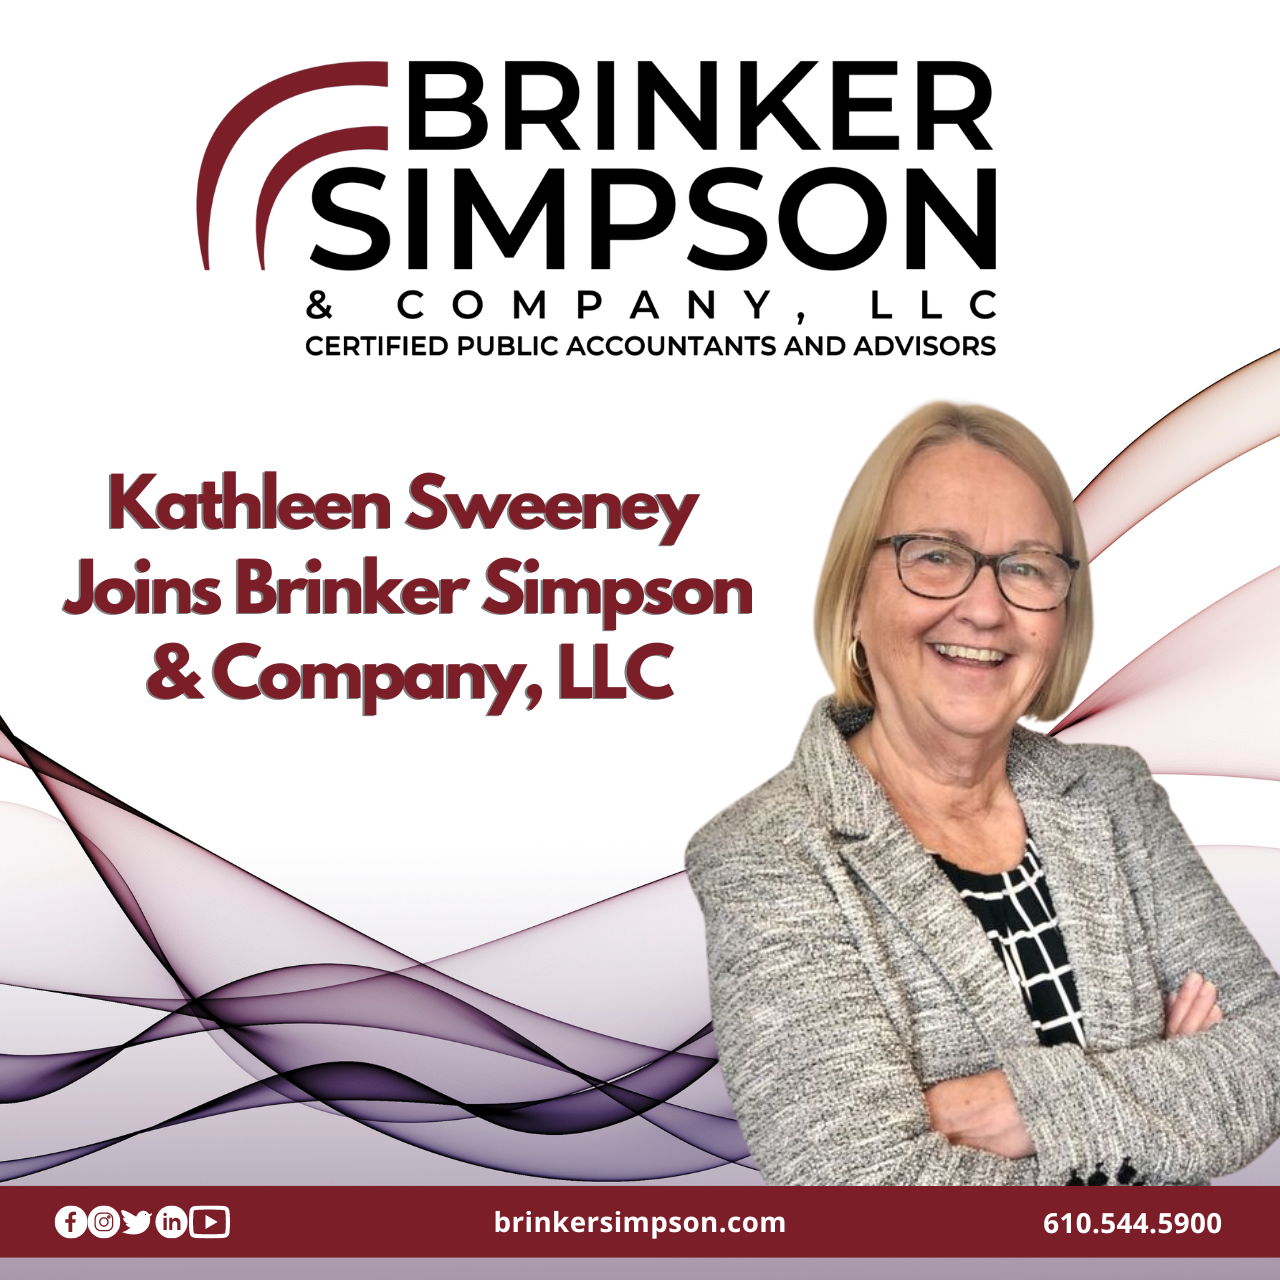 Kathleen Sweeney Joins Brinker Simpson & Company, LLC